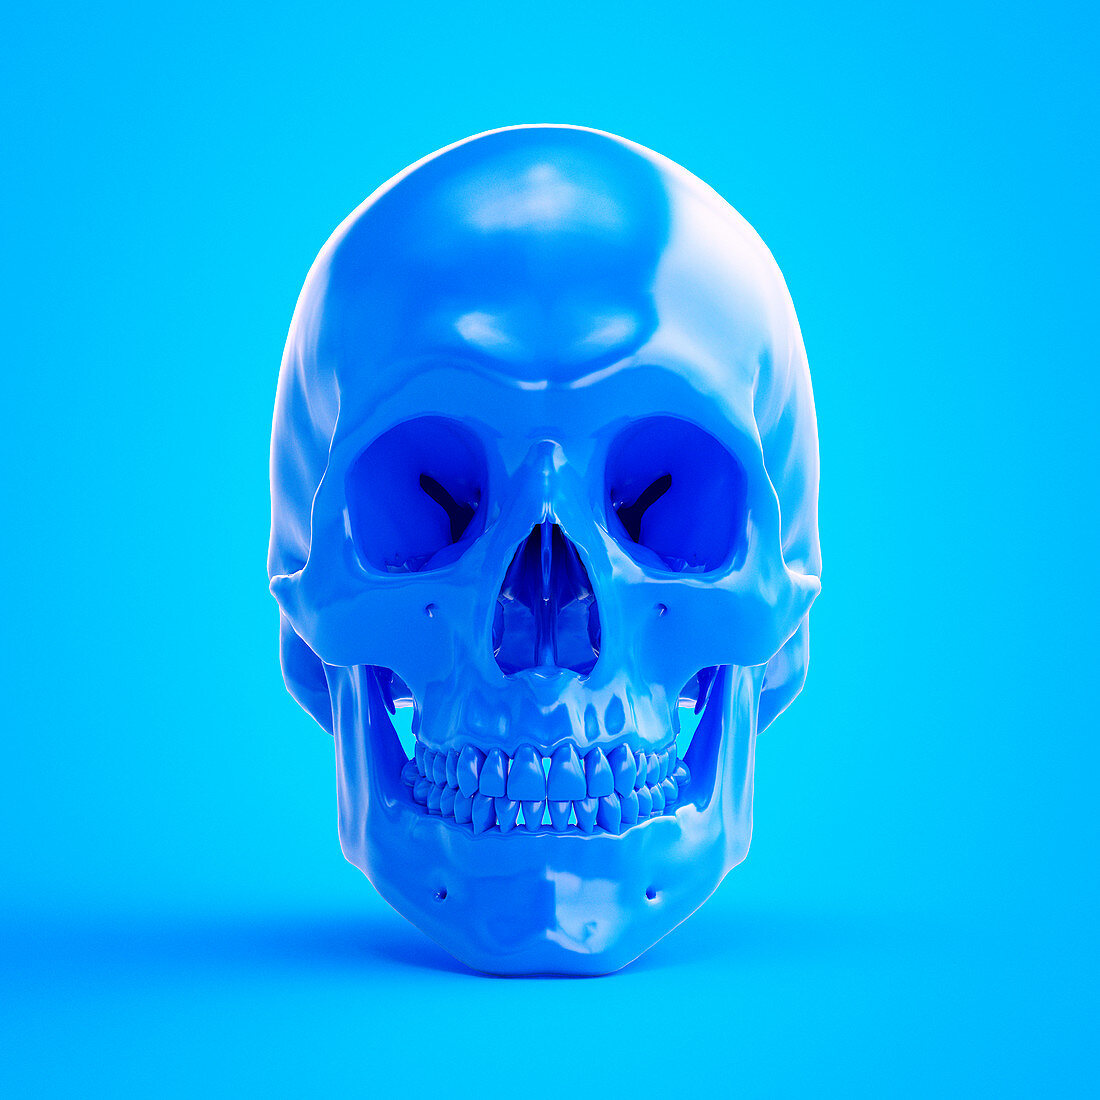 Illustration of a blue skull